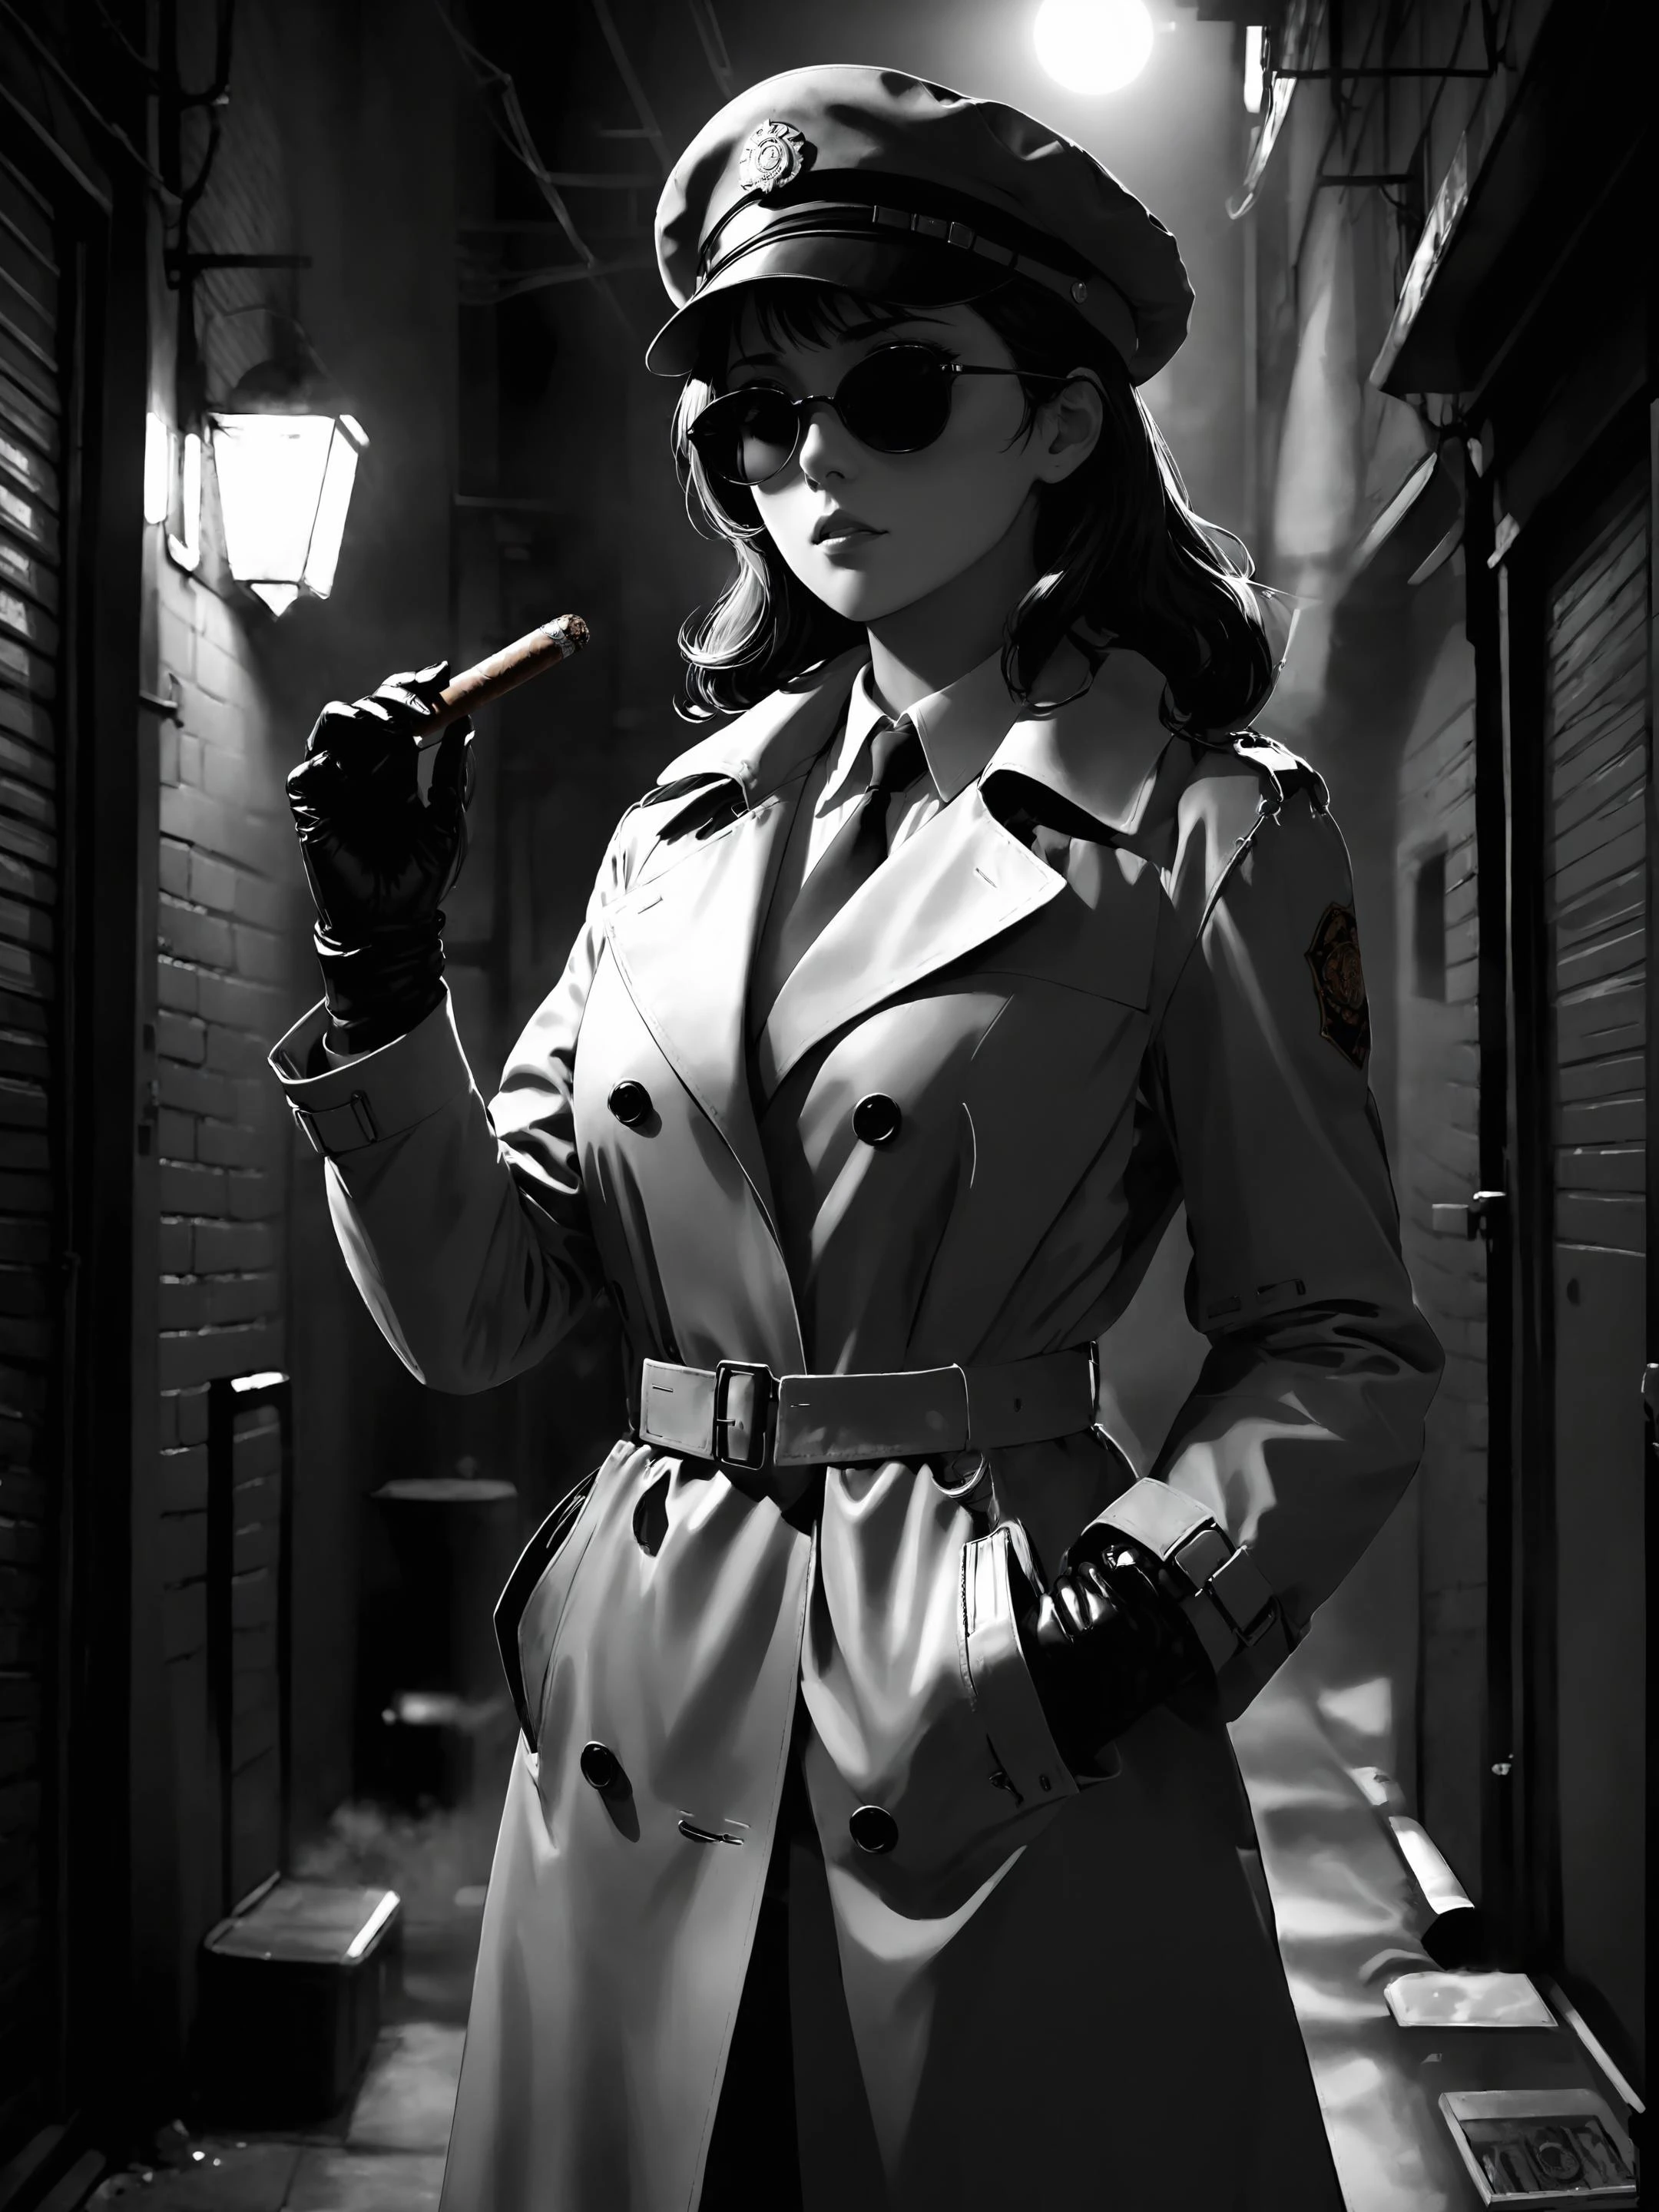 detective mujer vistiendo gabardina, gorra, Gafas de sol, guantes de cuero, Parado en un callejón encendiendo un cigarro., Cine negro, noche en blanco y negro, anime oscuro, ghibli, estilo coherente